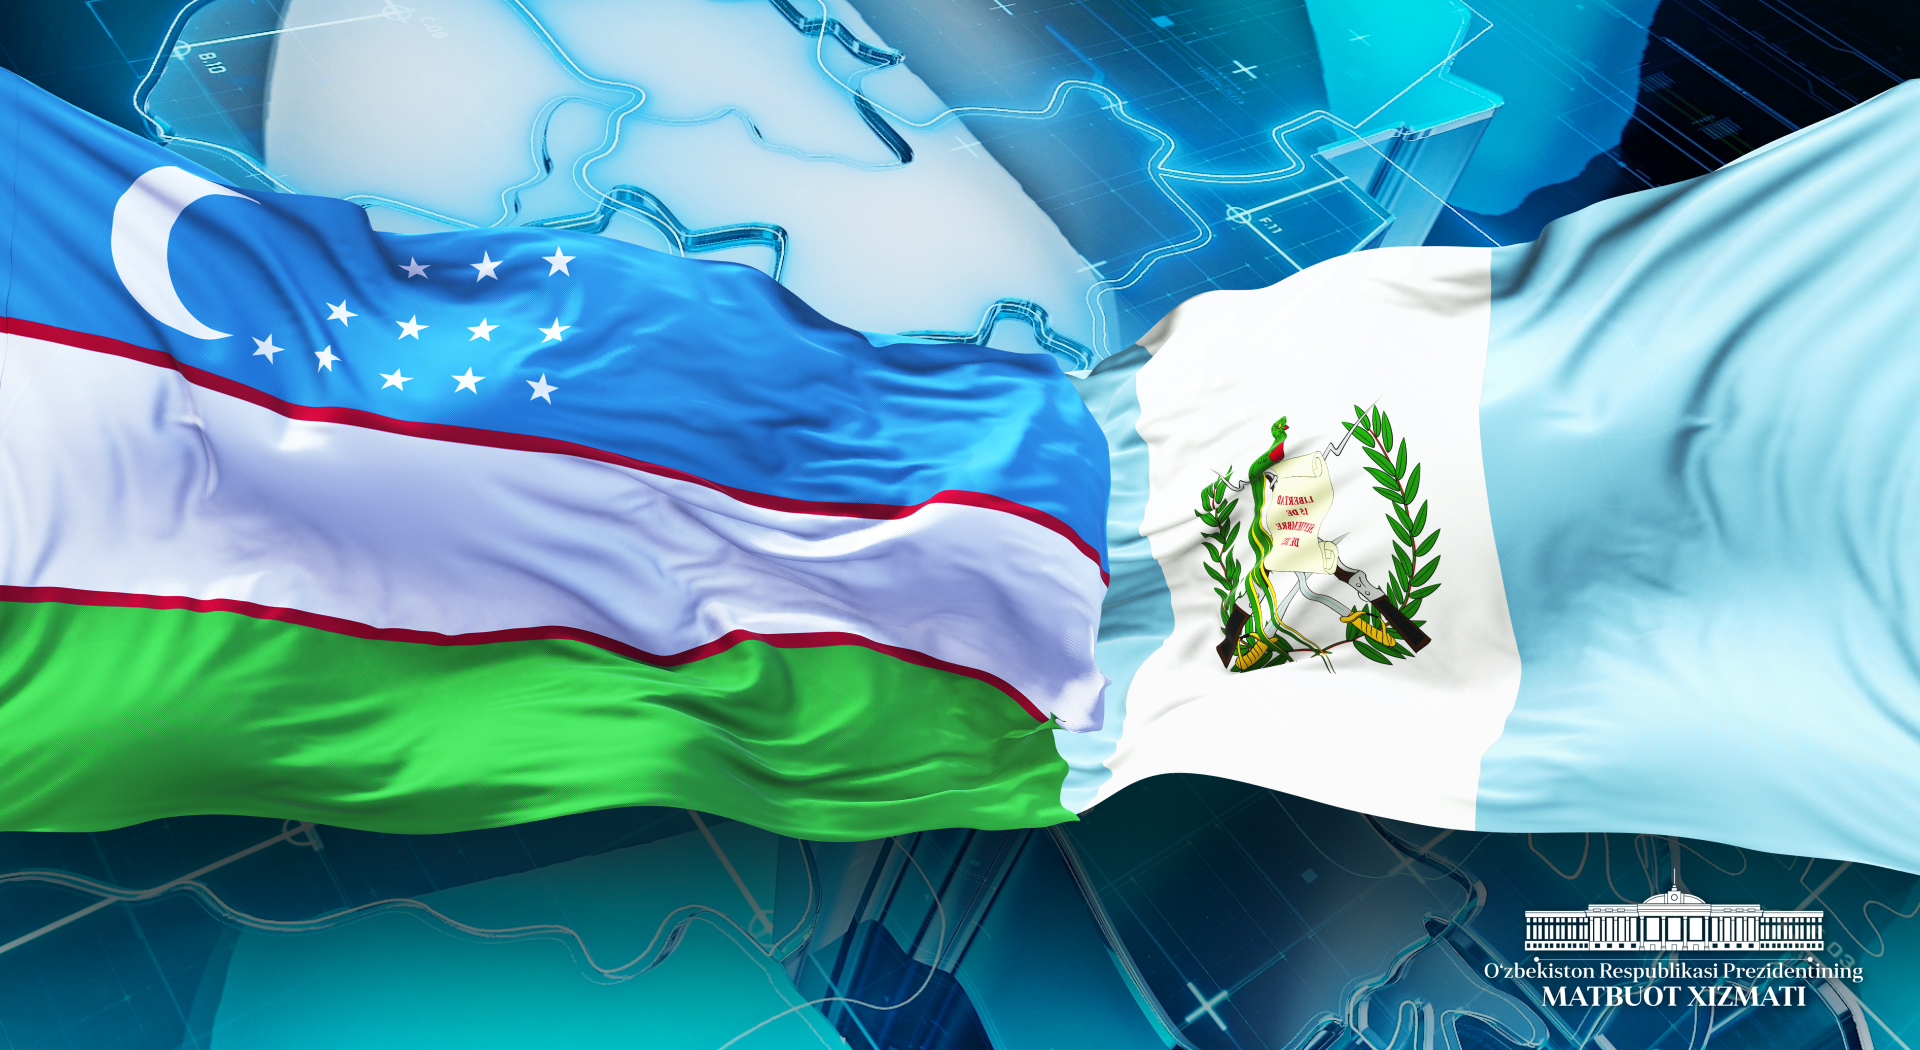 Uzbekistan’s President congratulates Guatemalan colleague